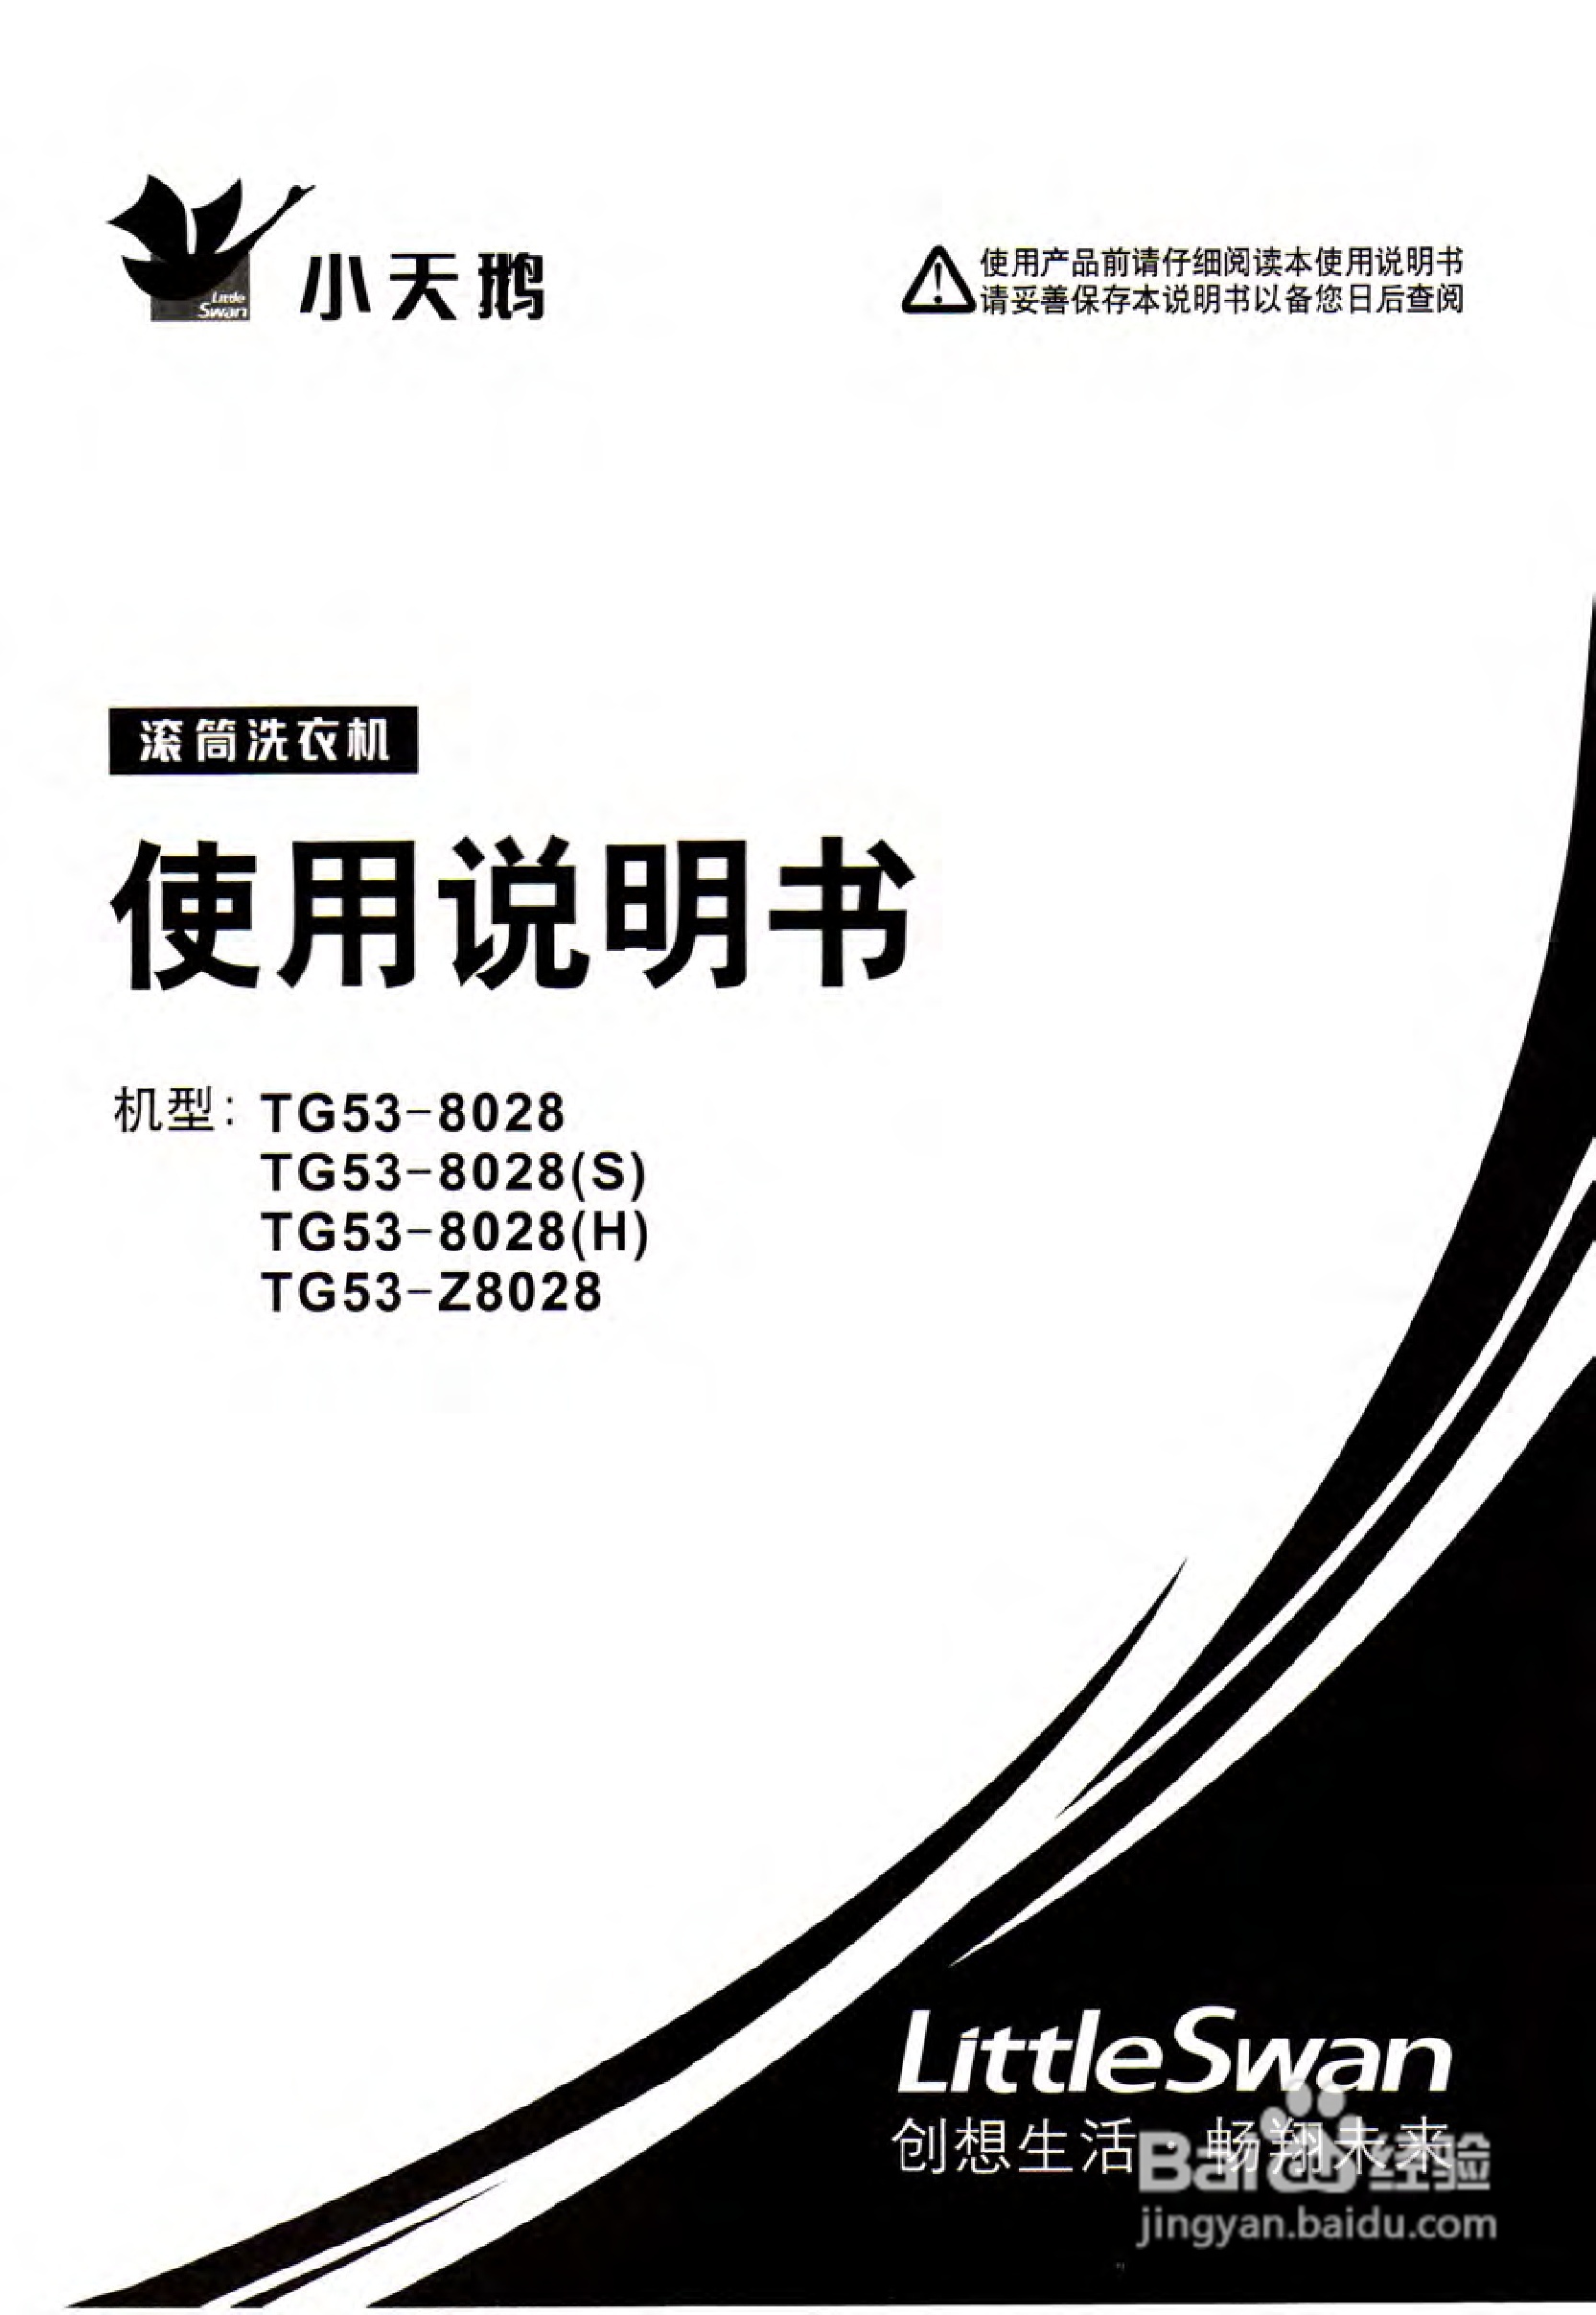 小天鹅tg53-z8028型洗衣机使用说明书[1]